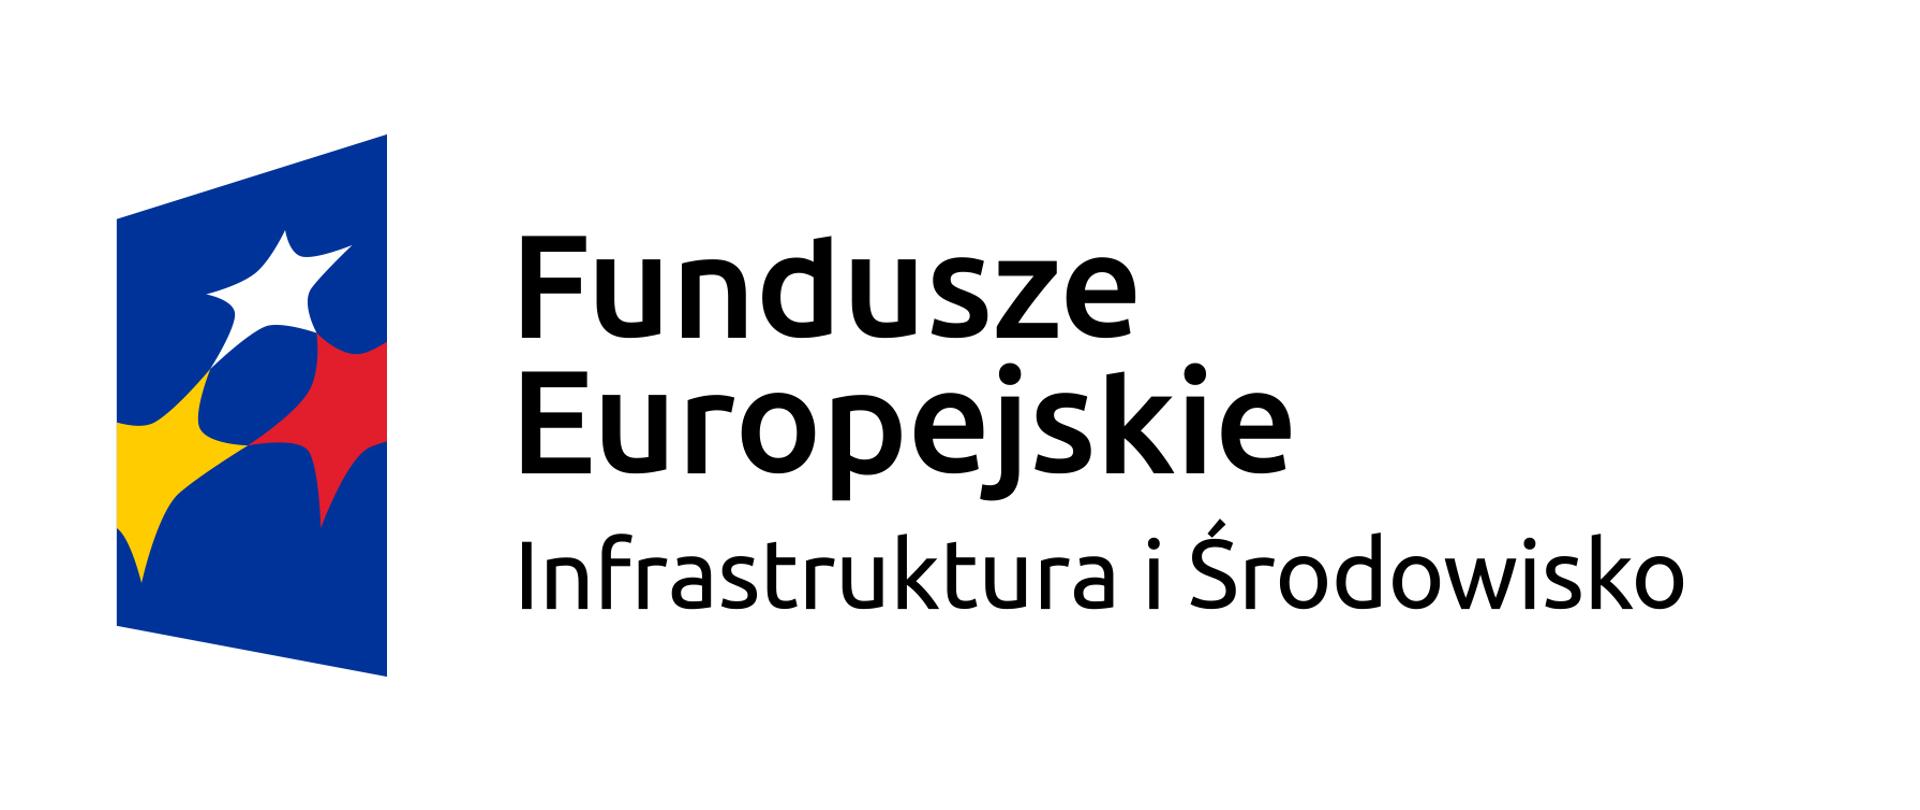 Obraz przedstawia logo Funduszy Europejskich, flagę Polski i flagę Unii Europejskiej